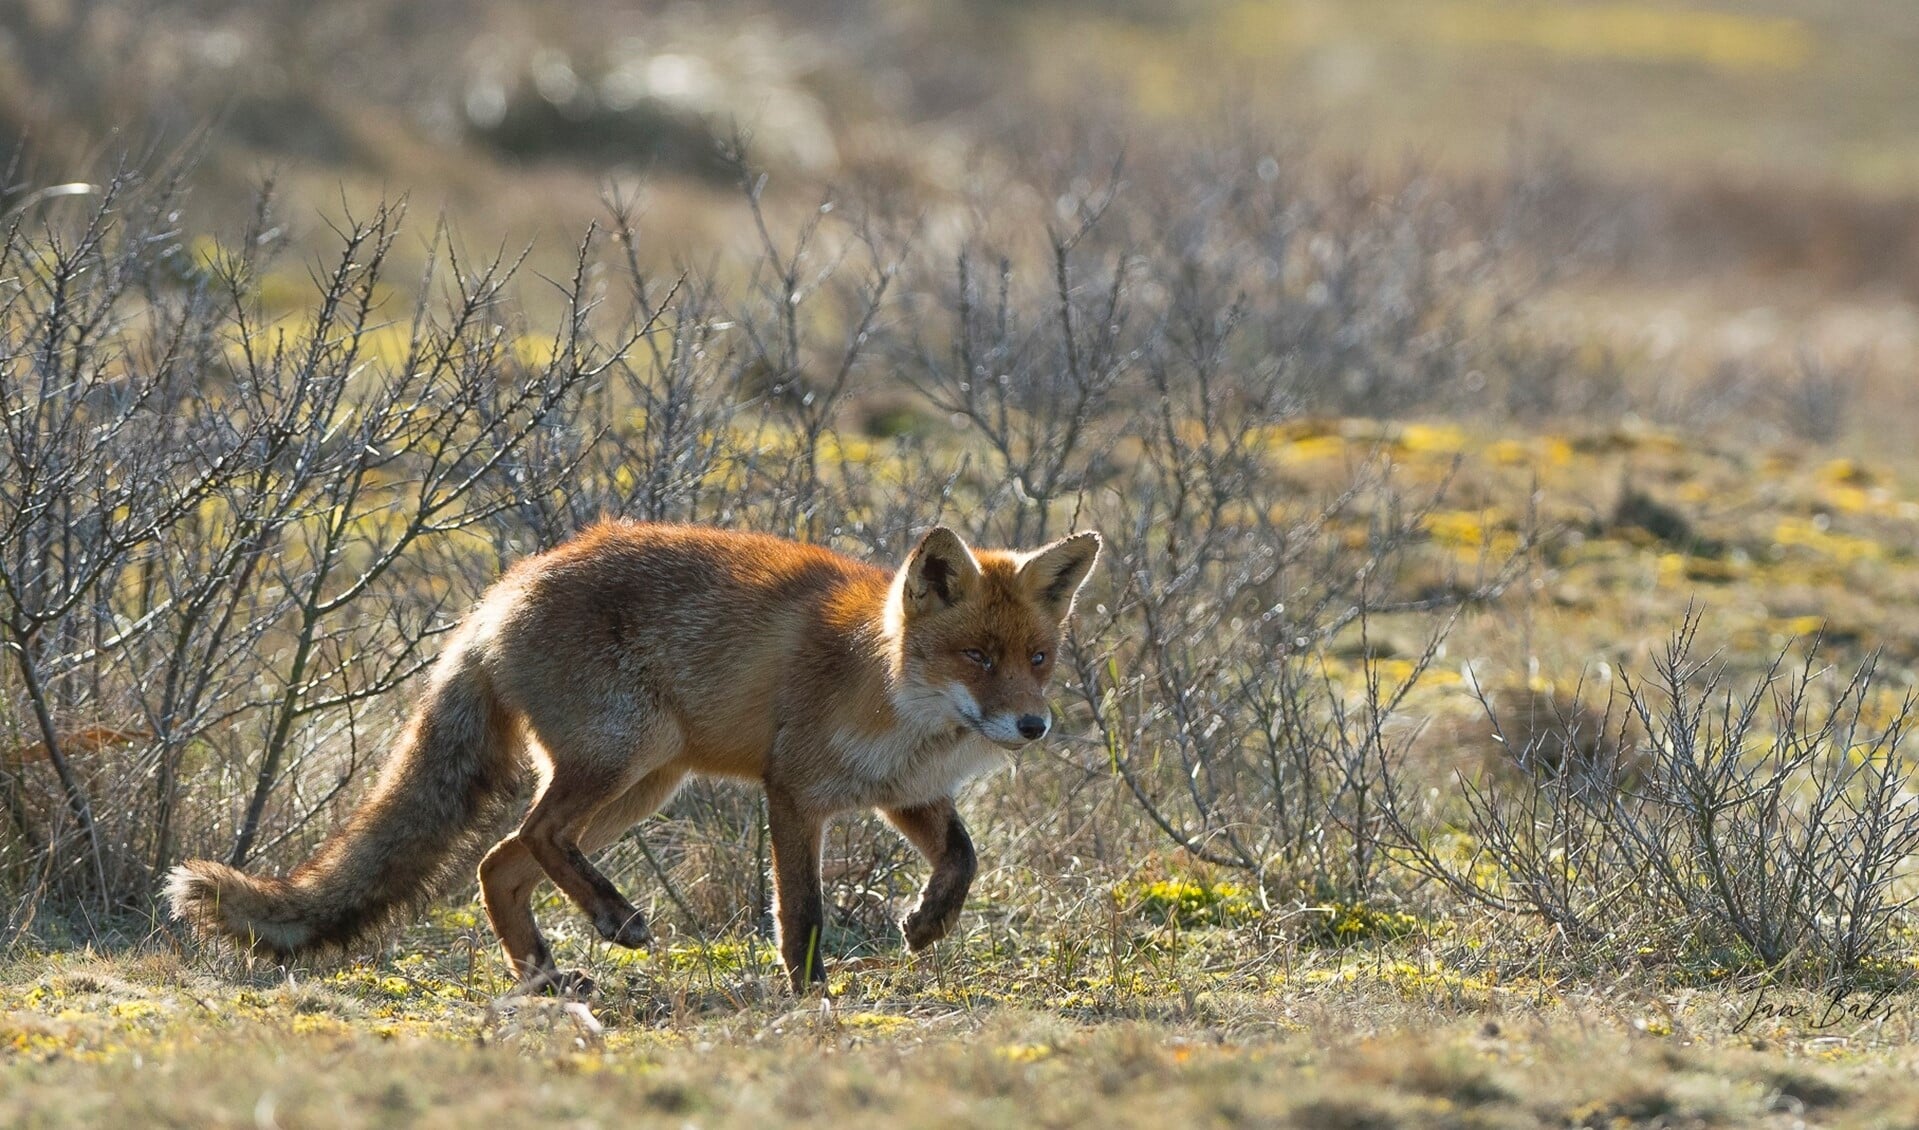 De vos heeft zich al gevestigd op Voorne-Putten en Goeree-Overflakkee (Foto: Jan Baks)